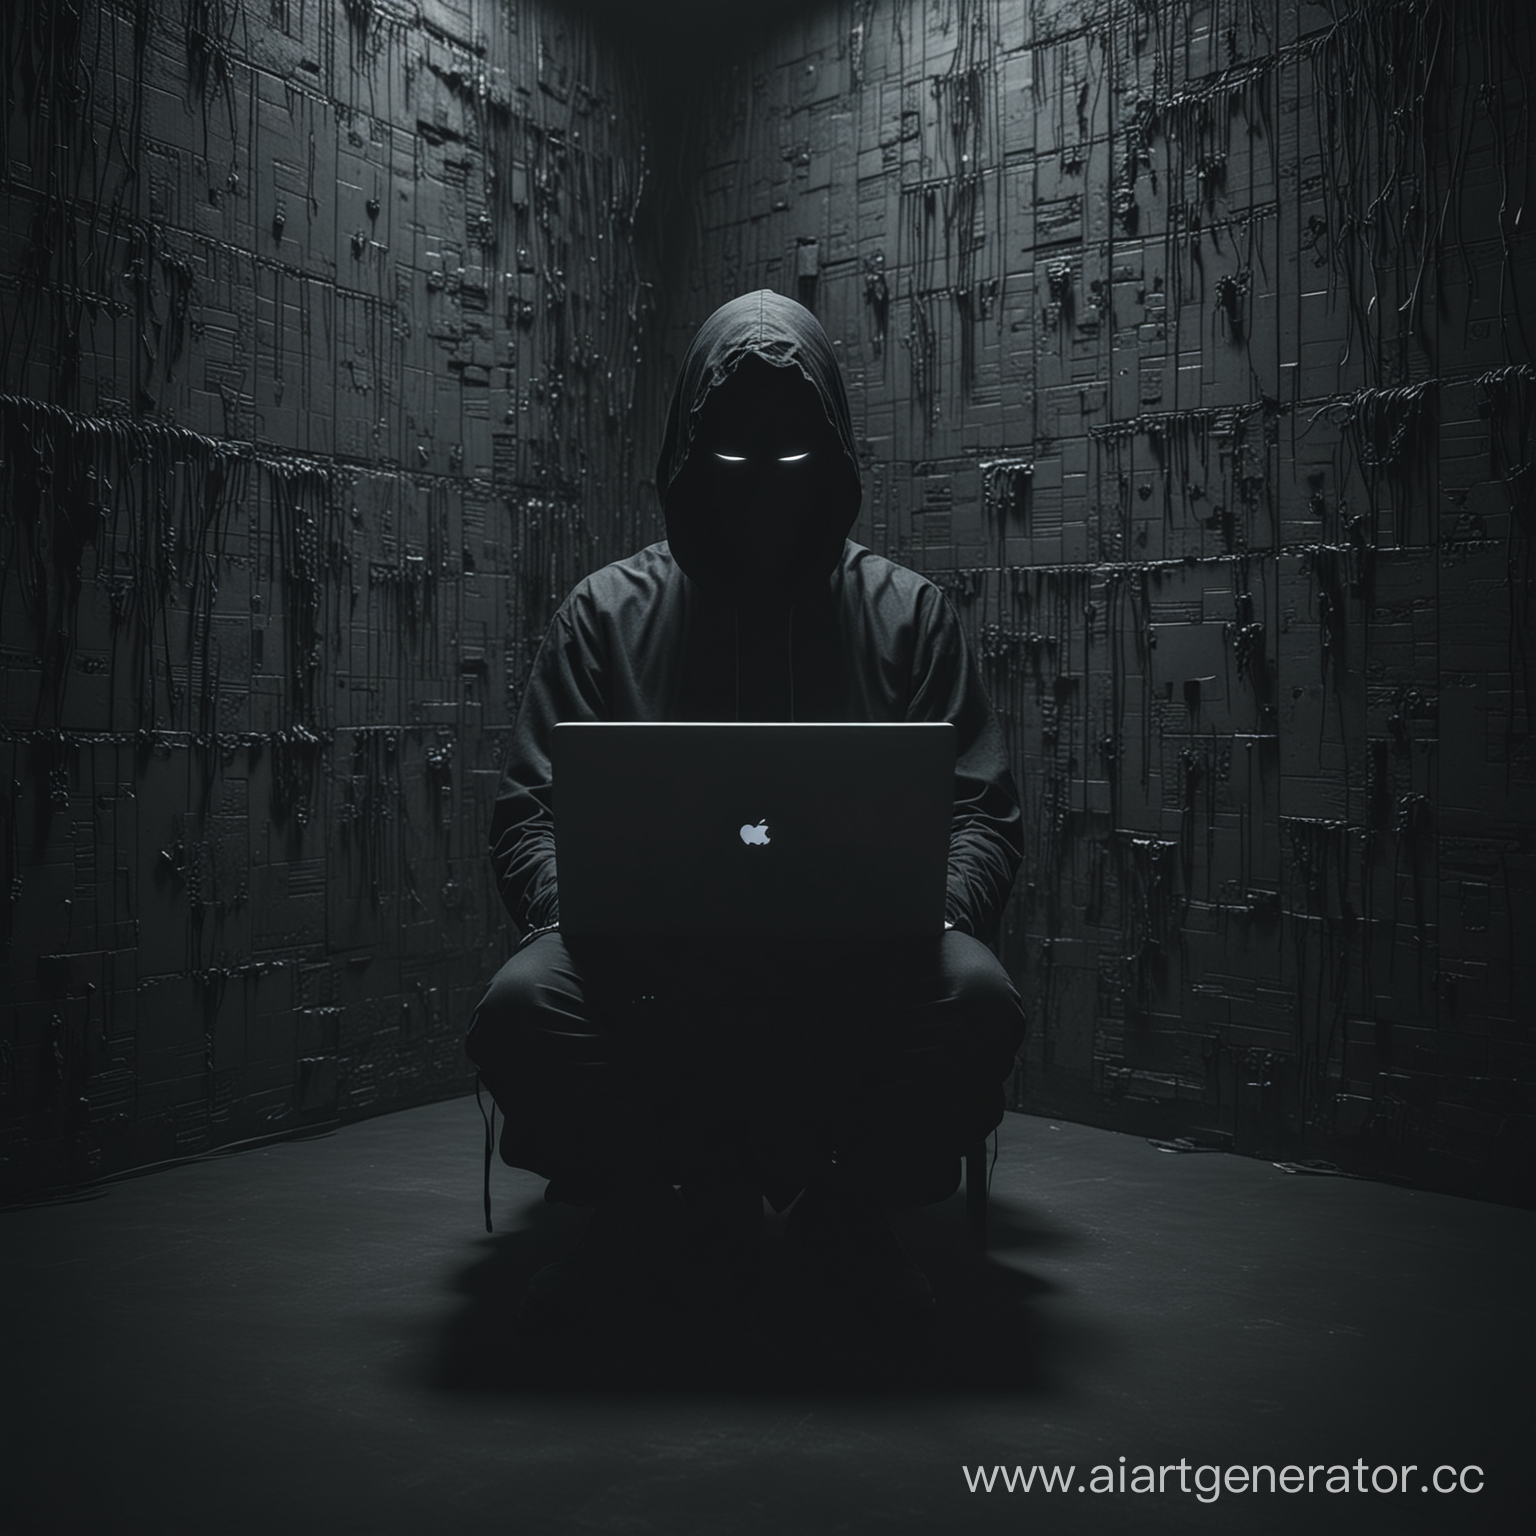 Темный хакер без лица просто все черное, сидит в комнате, программирует странные стены, кртуо темновато